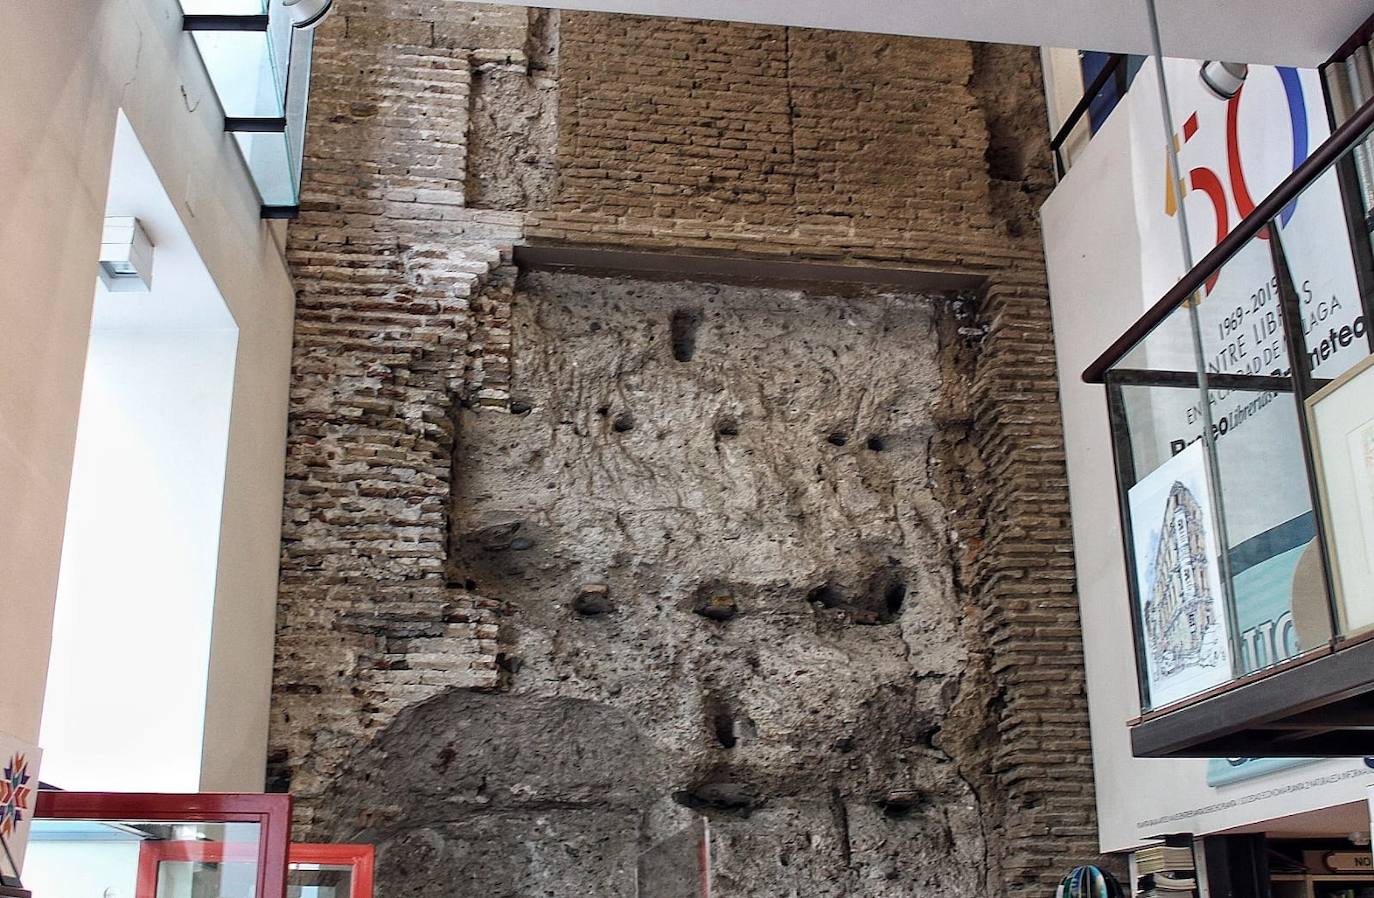 Restos de la muralla nazarí (siglos XIII-XV).Ubicación: Librería Proteo Prometeo. Visitable